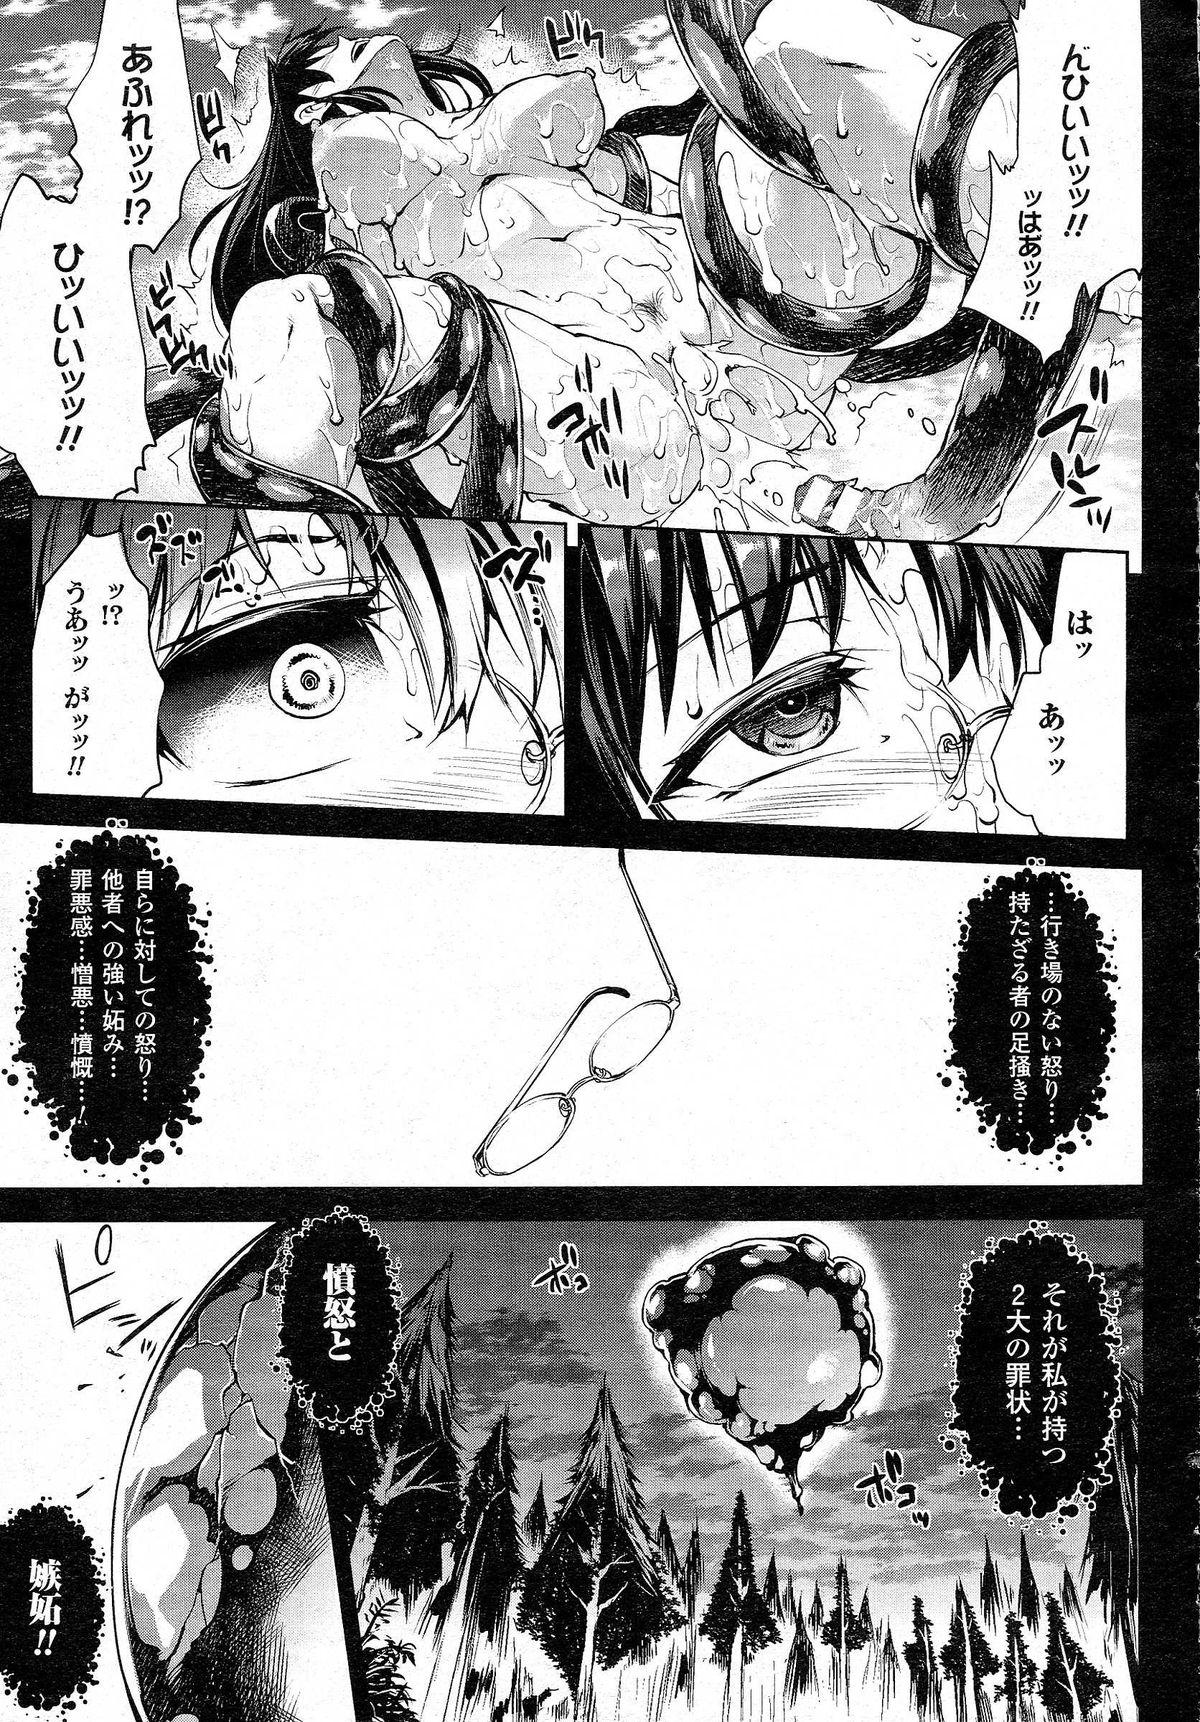 Pov Blowjob [Erect Sawaru] Shinkyoku no Grimoire -PANDRA saga 2nd story- CH 13-20 Lez - Page 11